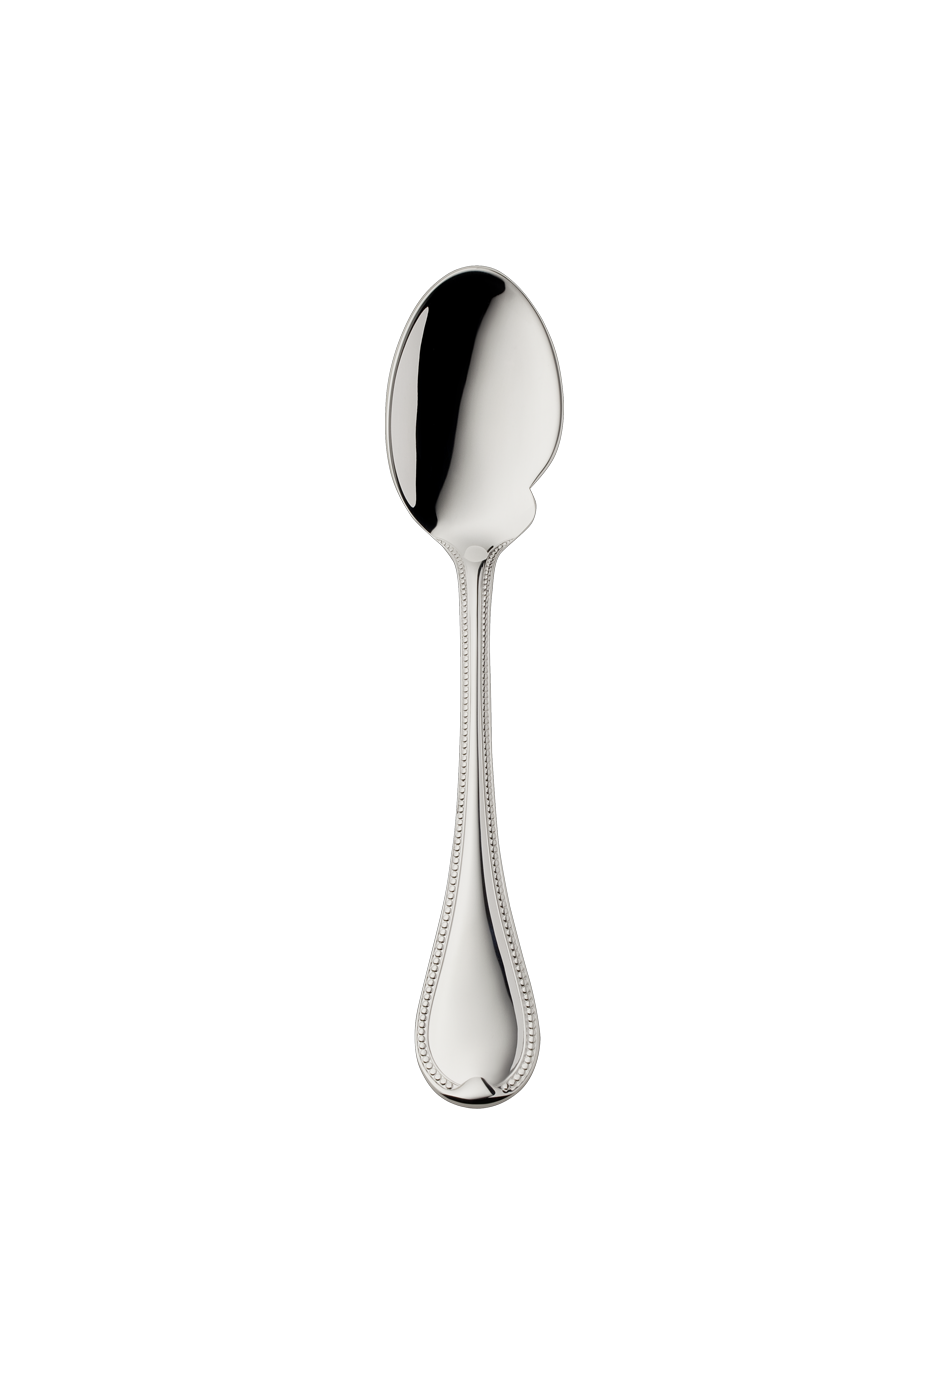 Französisch-Perl Gourmet spoon (925 Sterling Silver)